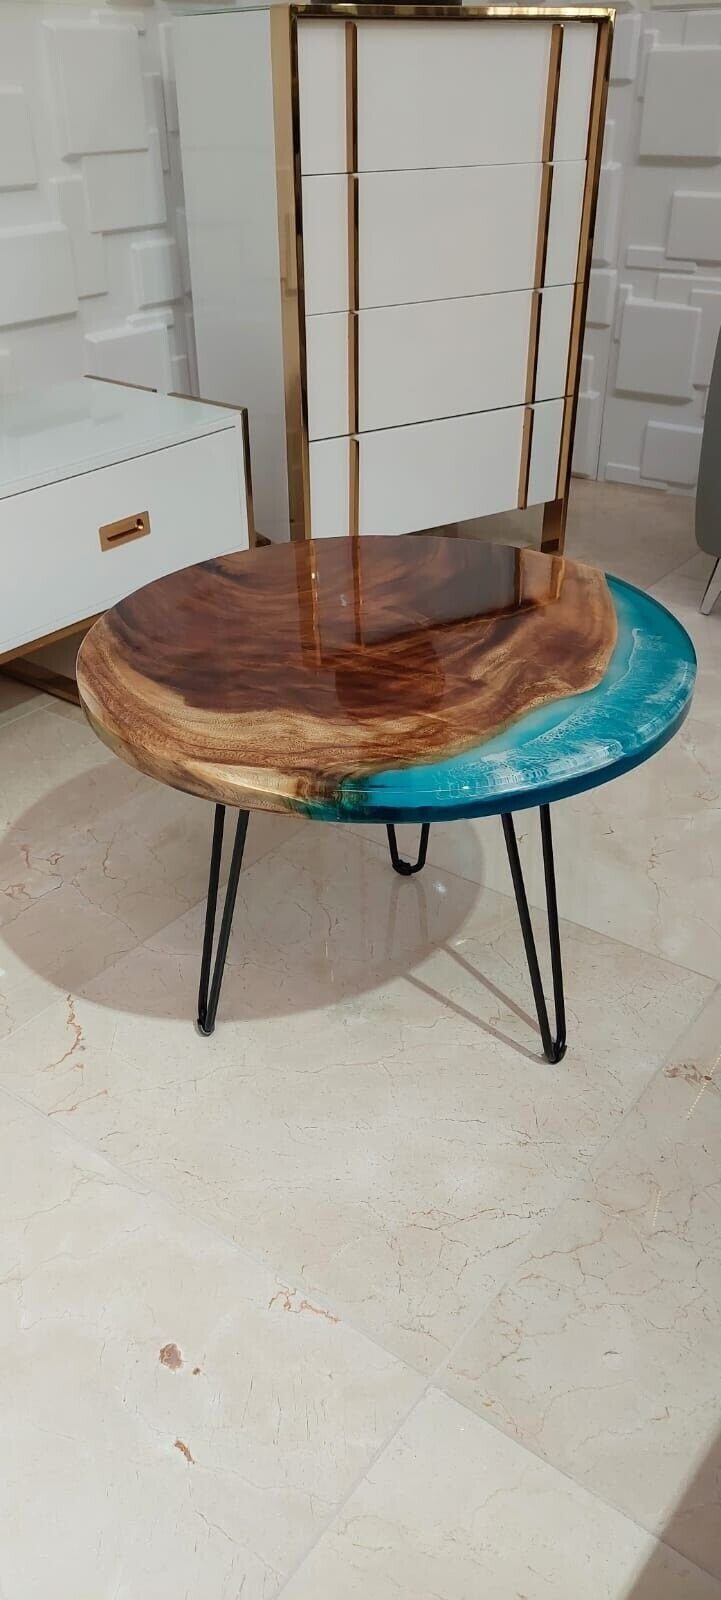 JVmoebel Couchtisch Couchtisch Sofort Tische in (Couchtisch), Tisch Made Wohnzimmer Europe Harz Holz Handarbeit Möbel